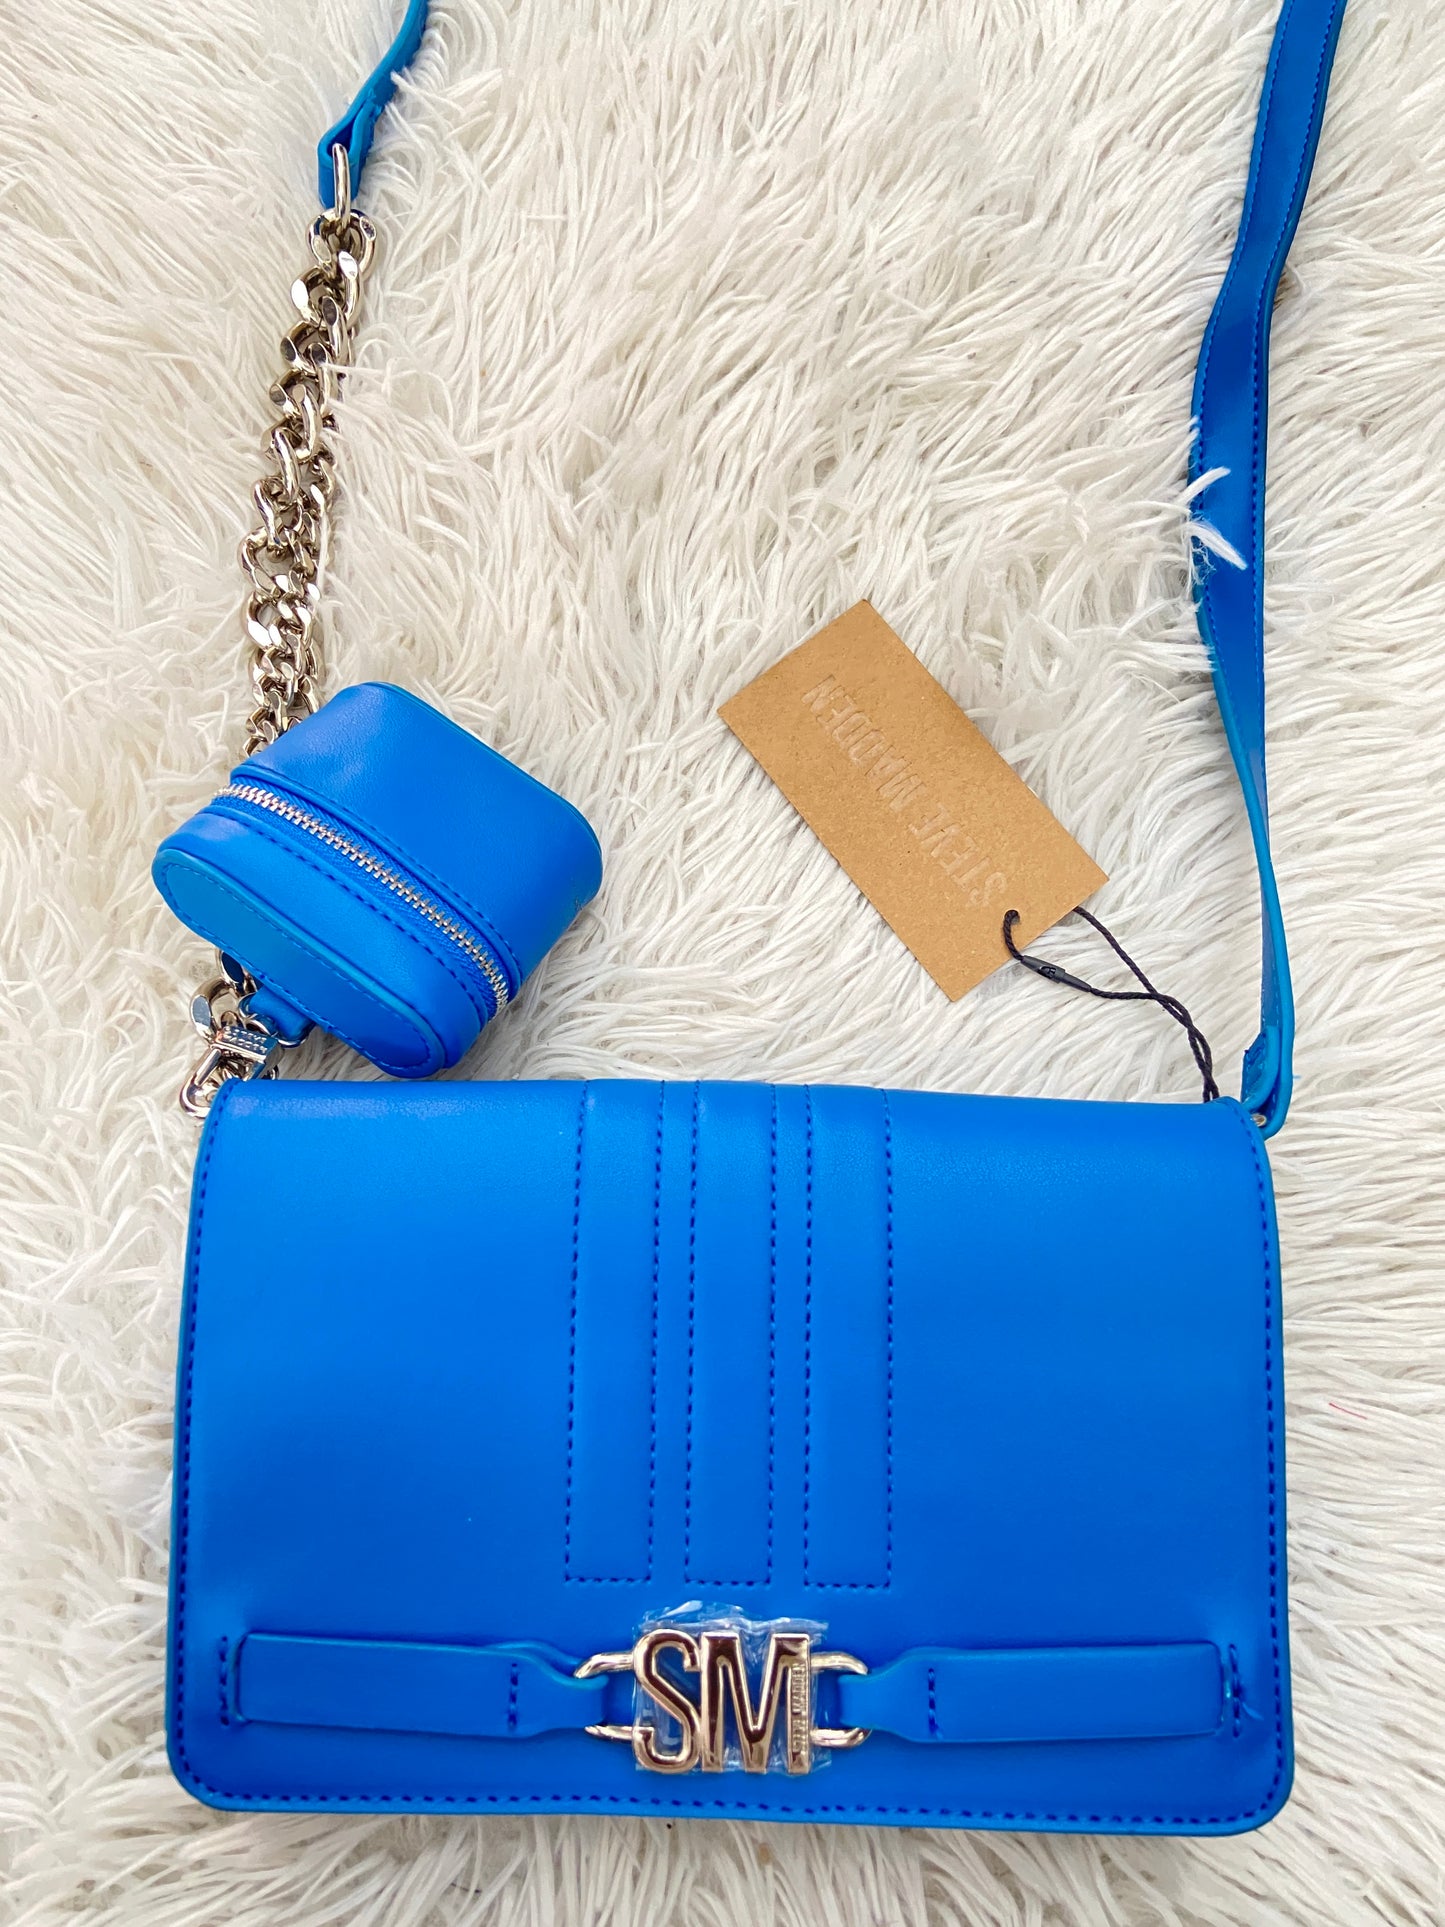 Cartera STEVE MADDEN original azul con placa en color plateado y mini cartera adicional.